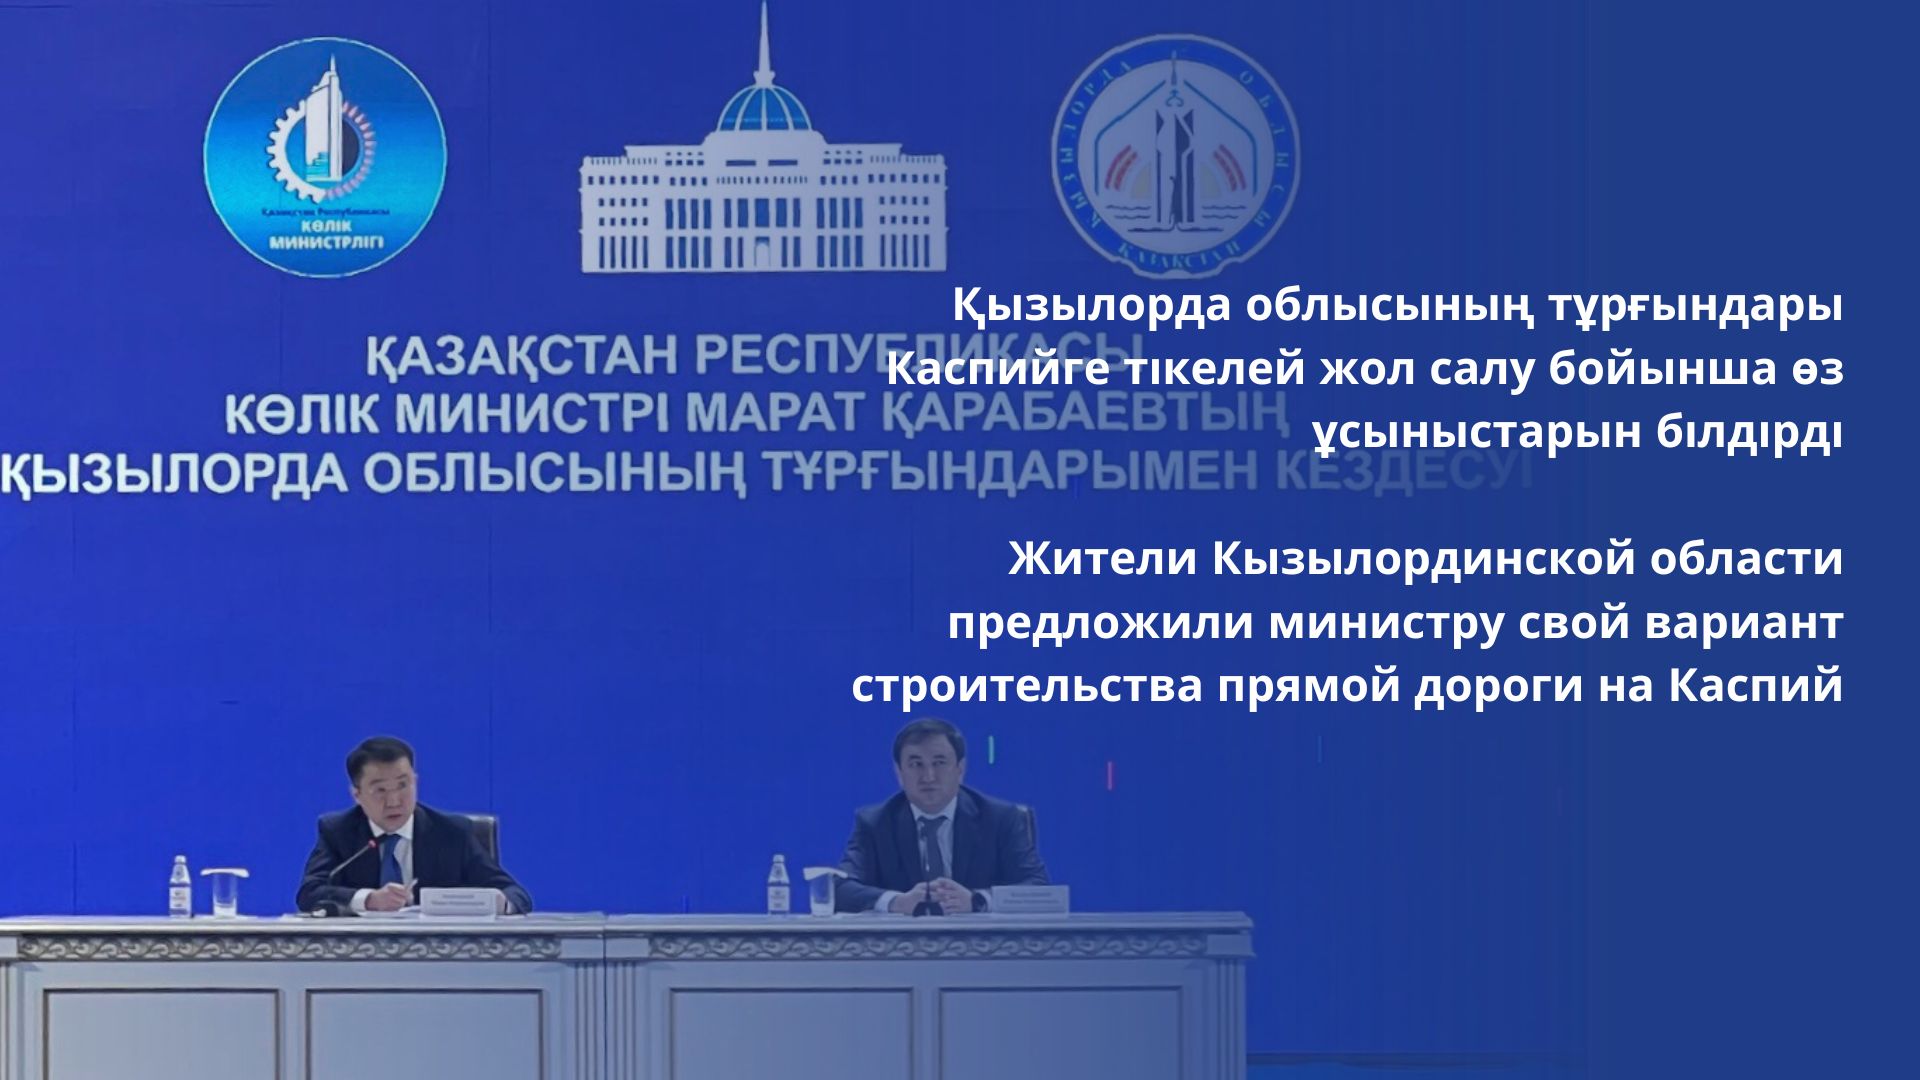 Жители Кызылординской области предложили министру свой вариант строительства прямой дороги на Каспий